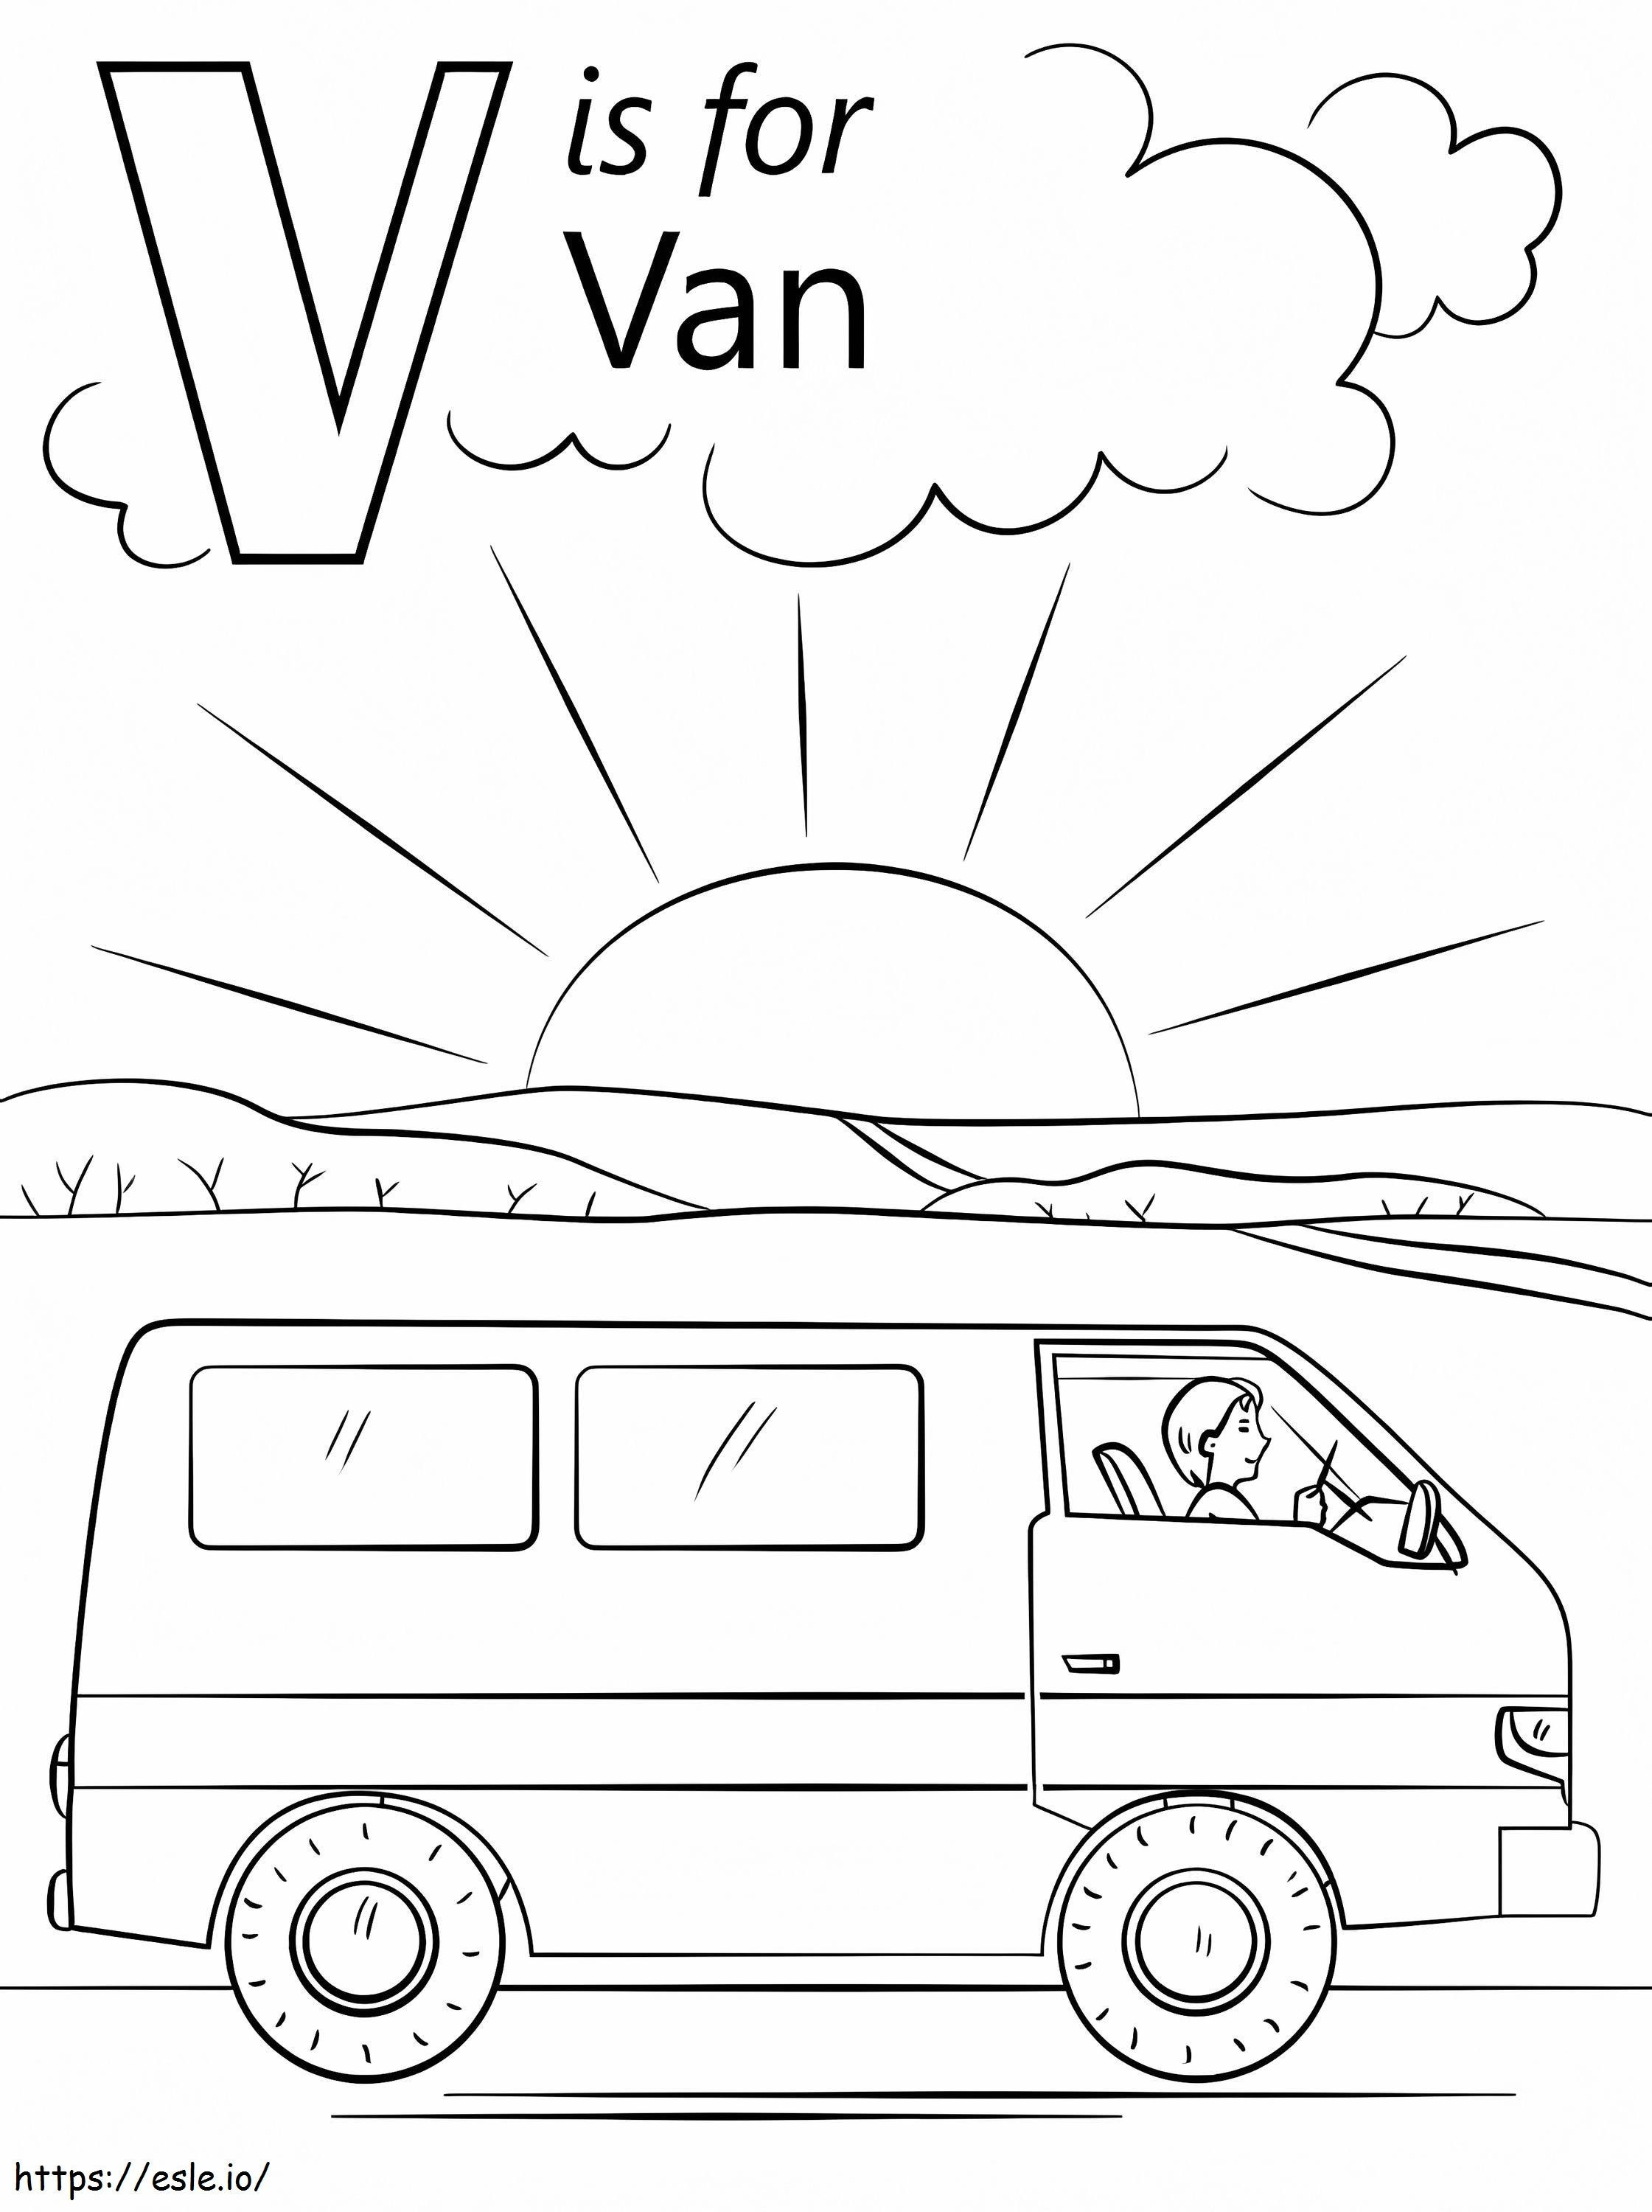 Van Letter V coloring page